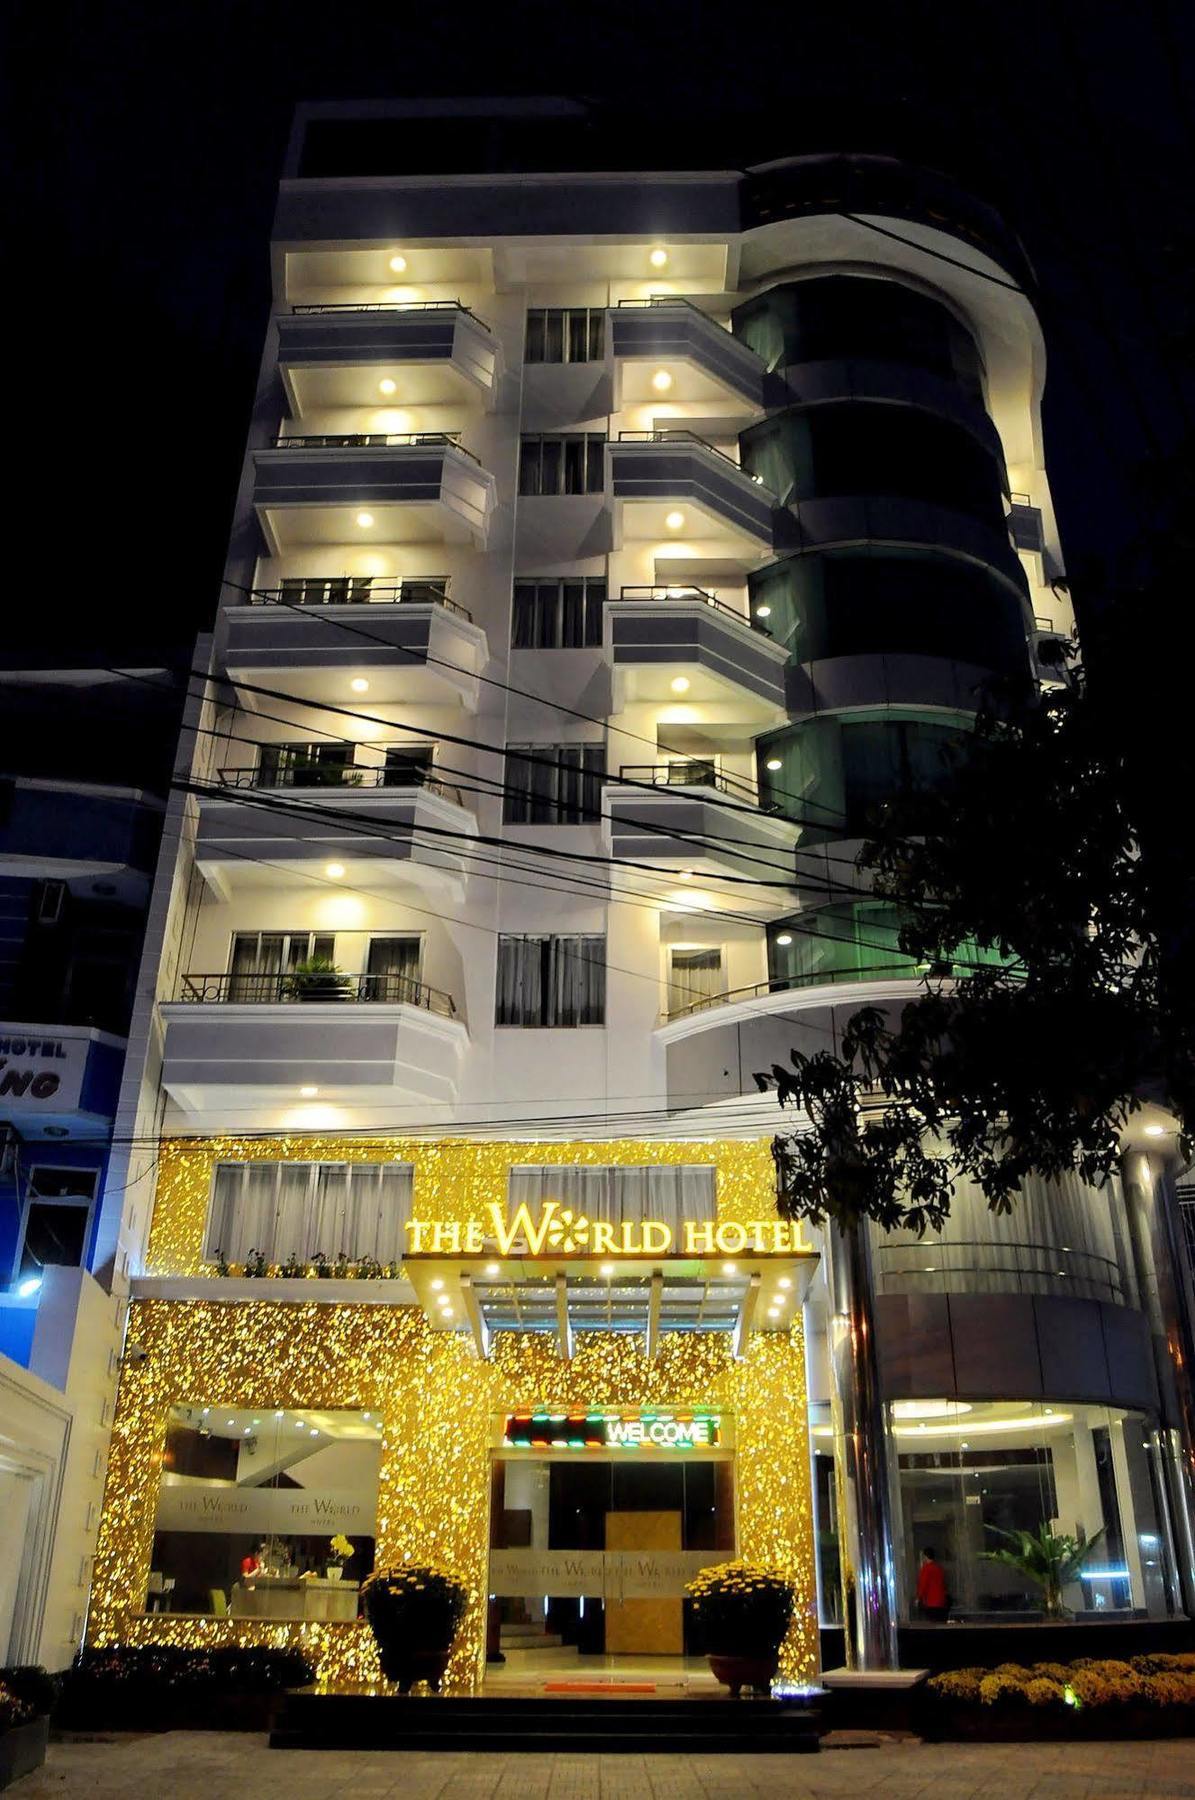 نها ترانج Camellia Nhatrang Hotel المظهر الخارجي الصورة